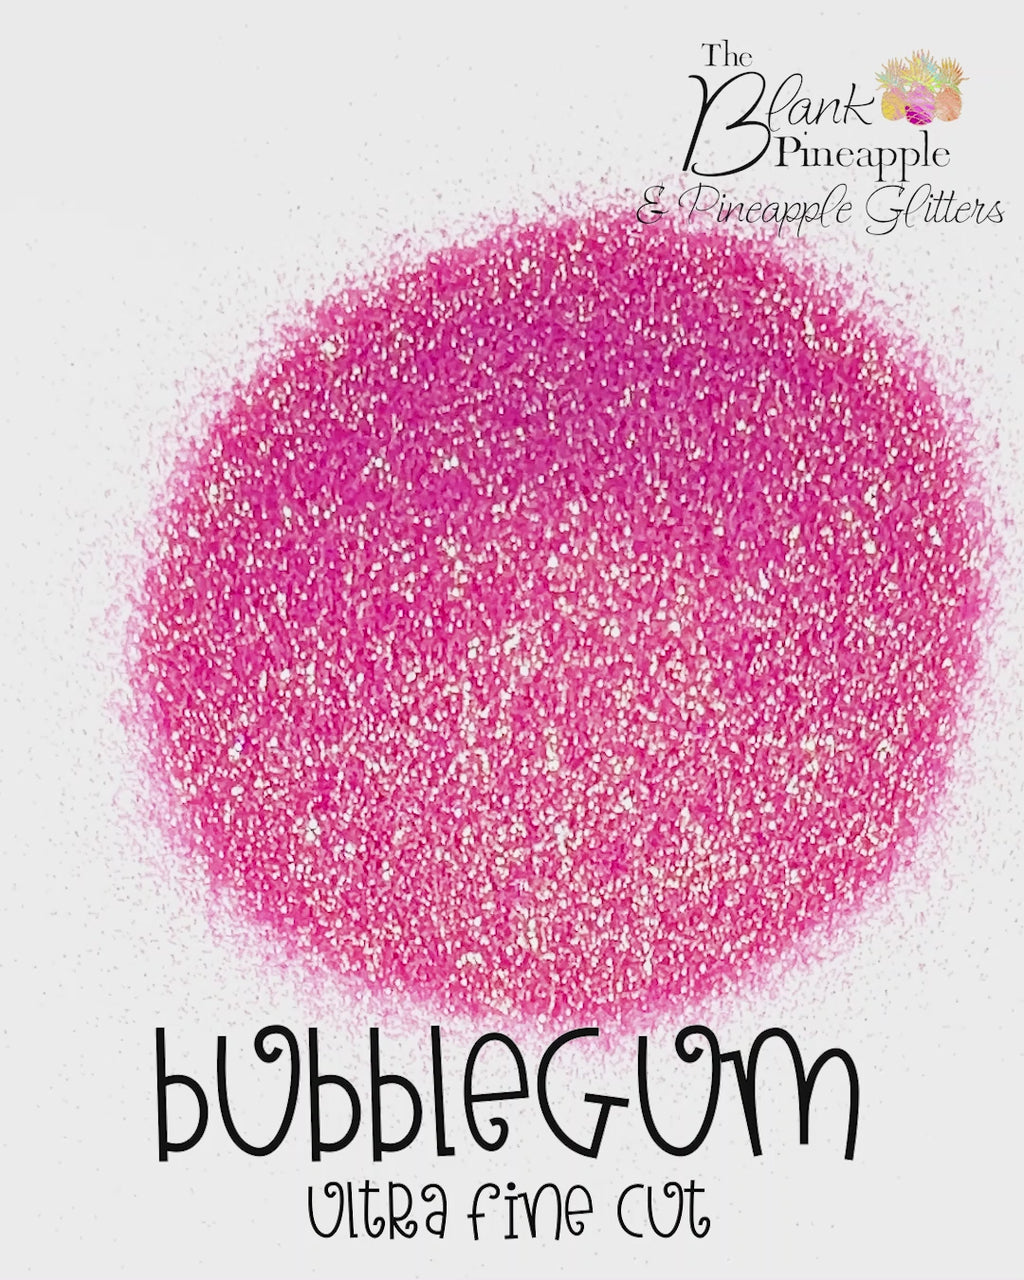 Bubblegum Ultra Fine Iridescent Polyester Glitter in a 2oz Shaker Bottle, Pink Iridescent Glitter